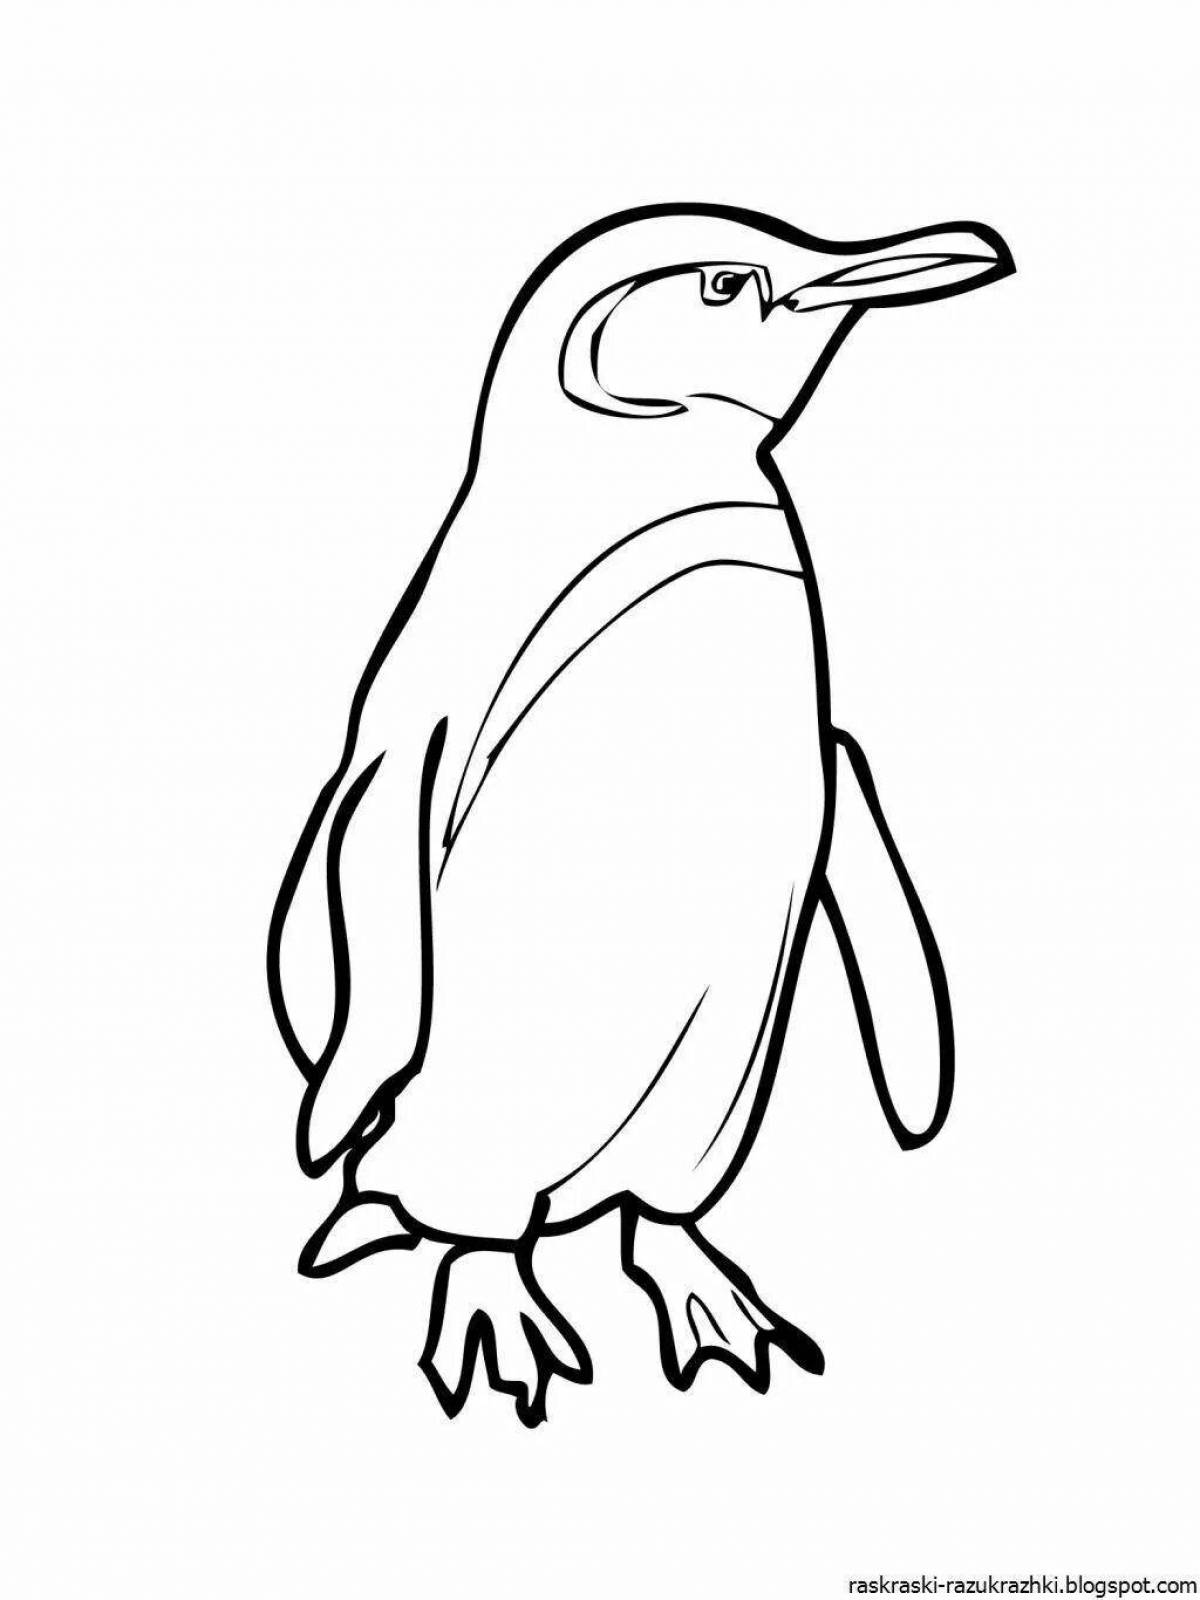 Захватывающая раскраска пингвинов